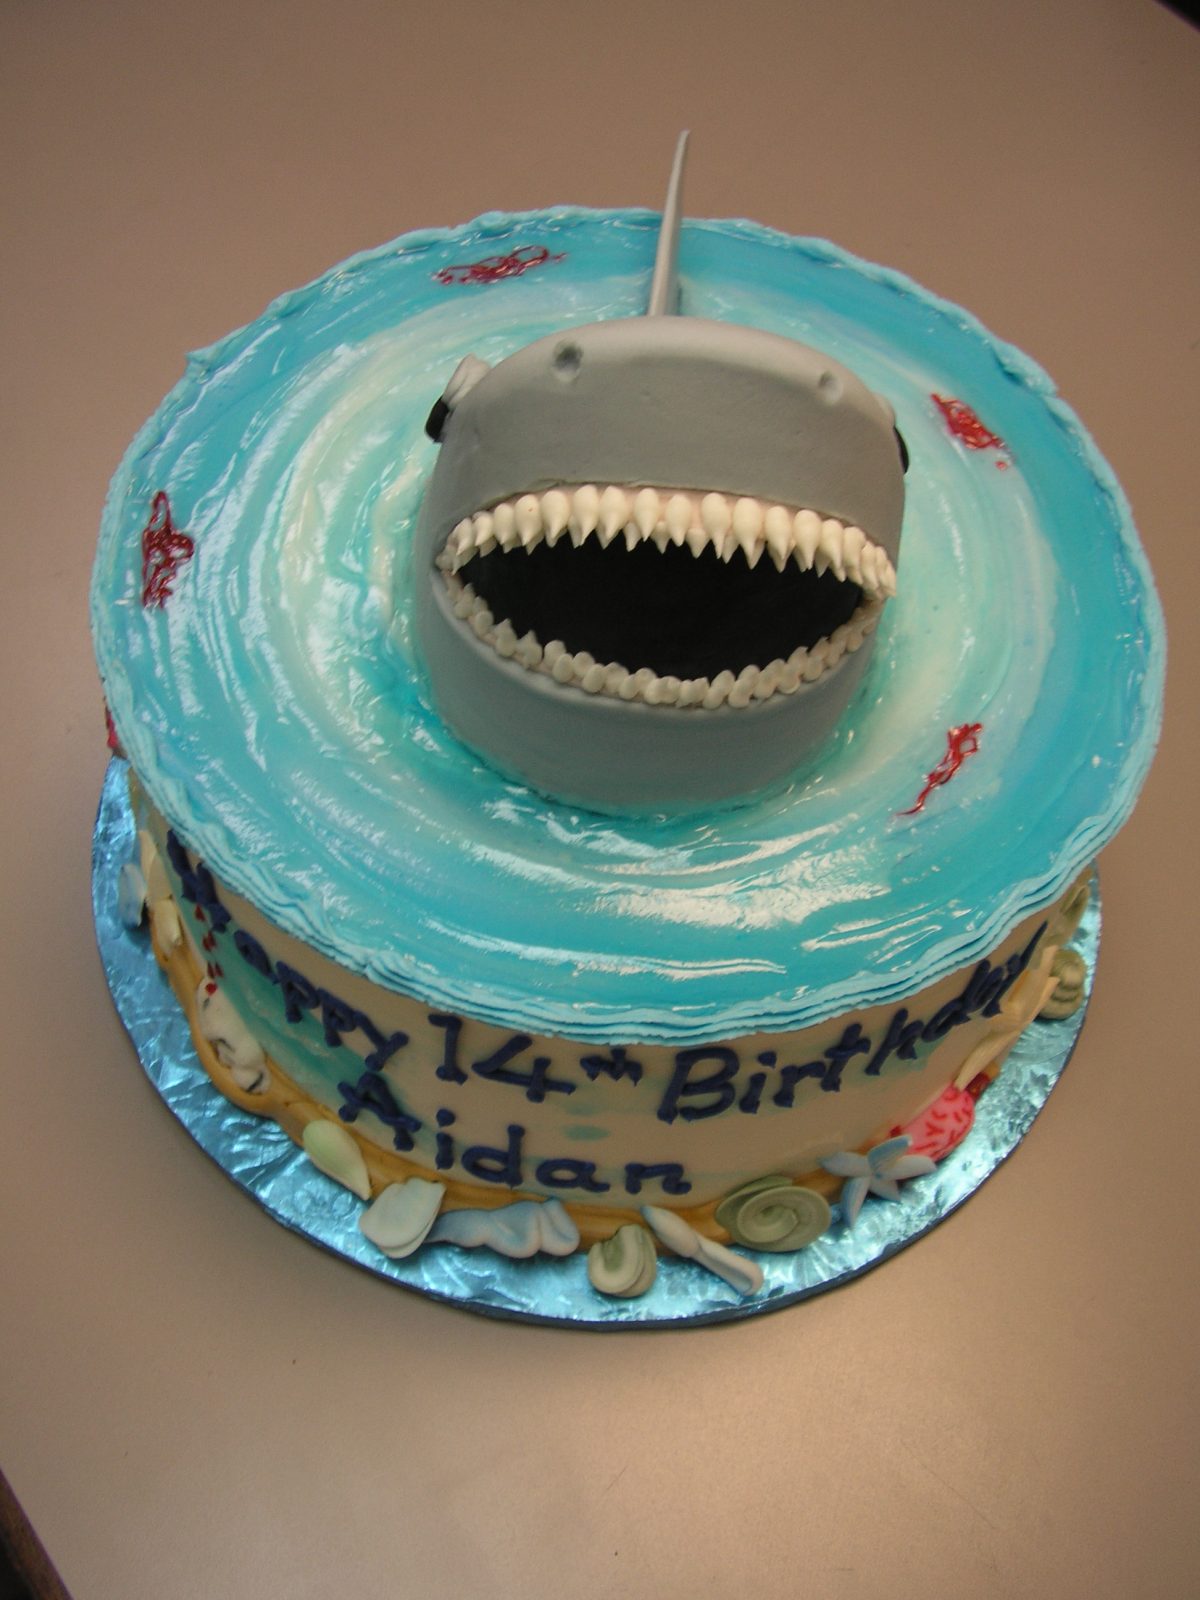 3D shark on a cake